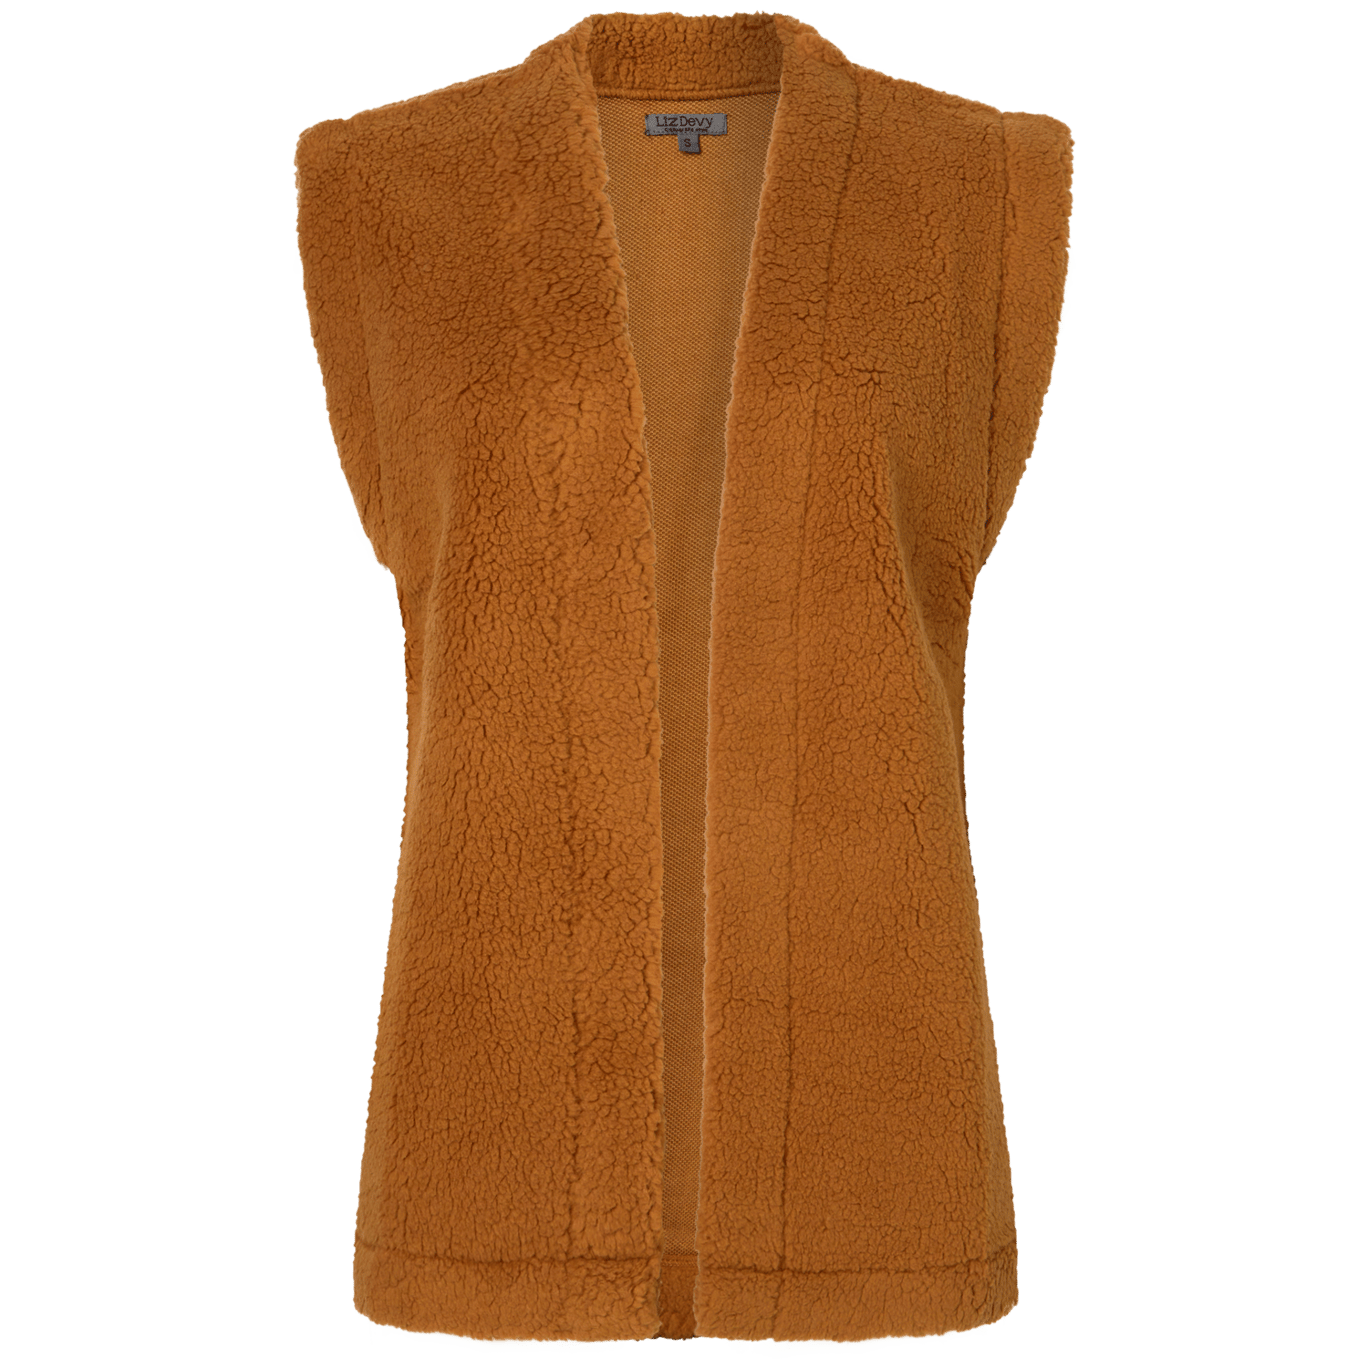 Action - Les vêtements en laine redeviennent comme neufs